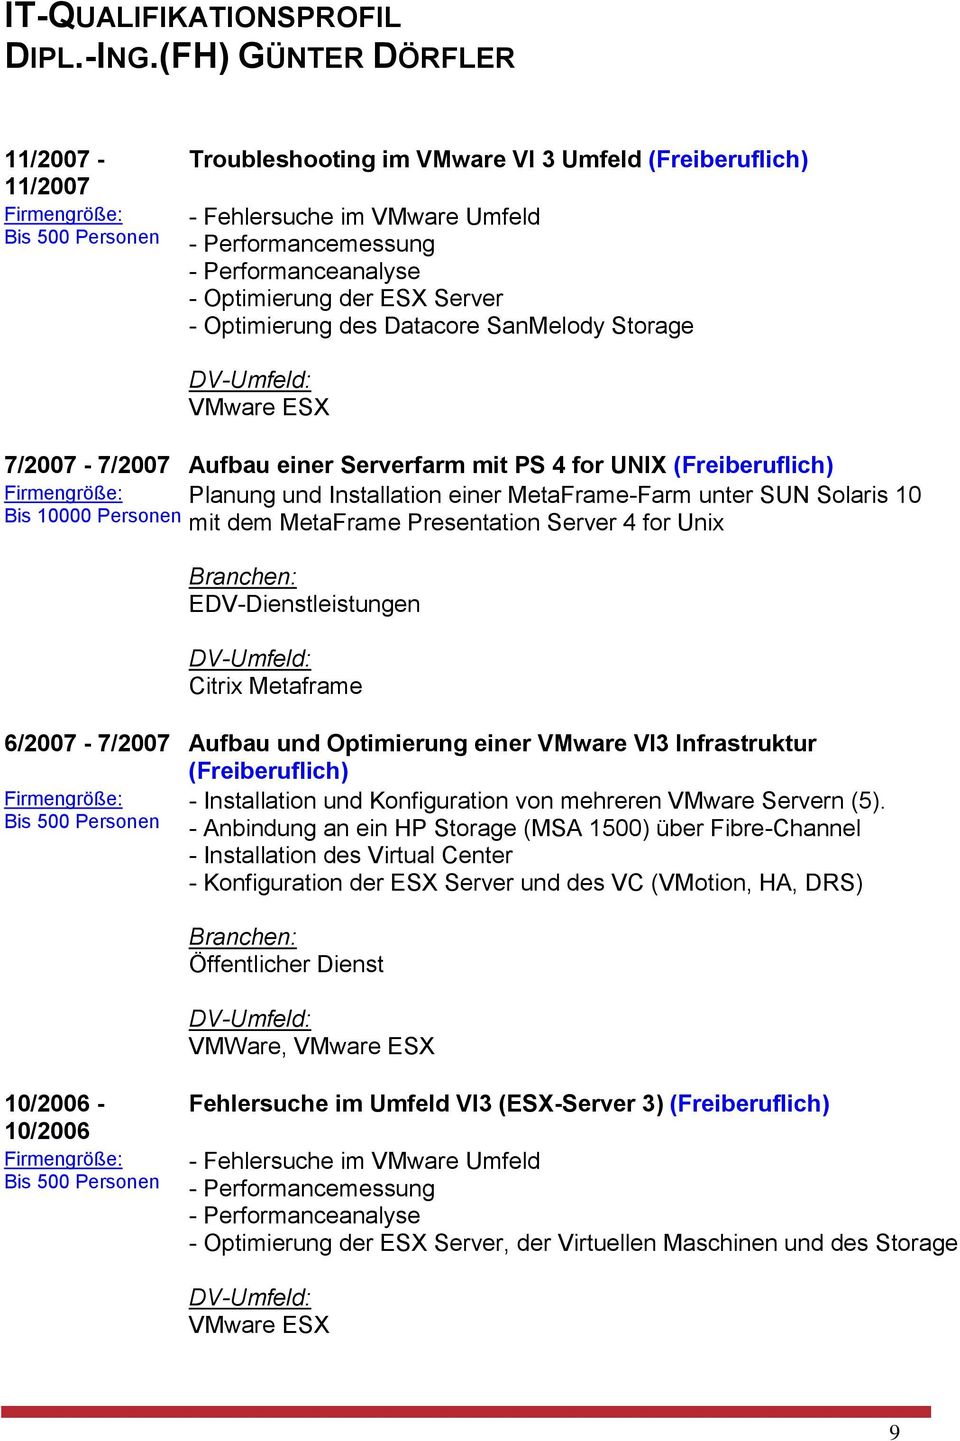 SUN Solaris 10 Bis 10000 Personen mit dem MetaFrame Presentation Server 4 for Unix EDV-Dienstleistungen Citrix Metaframe 6/2007-7/2007 Aufbau und Optimierung einer VMware VI3 Infrastruktur